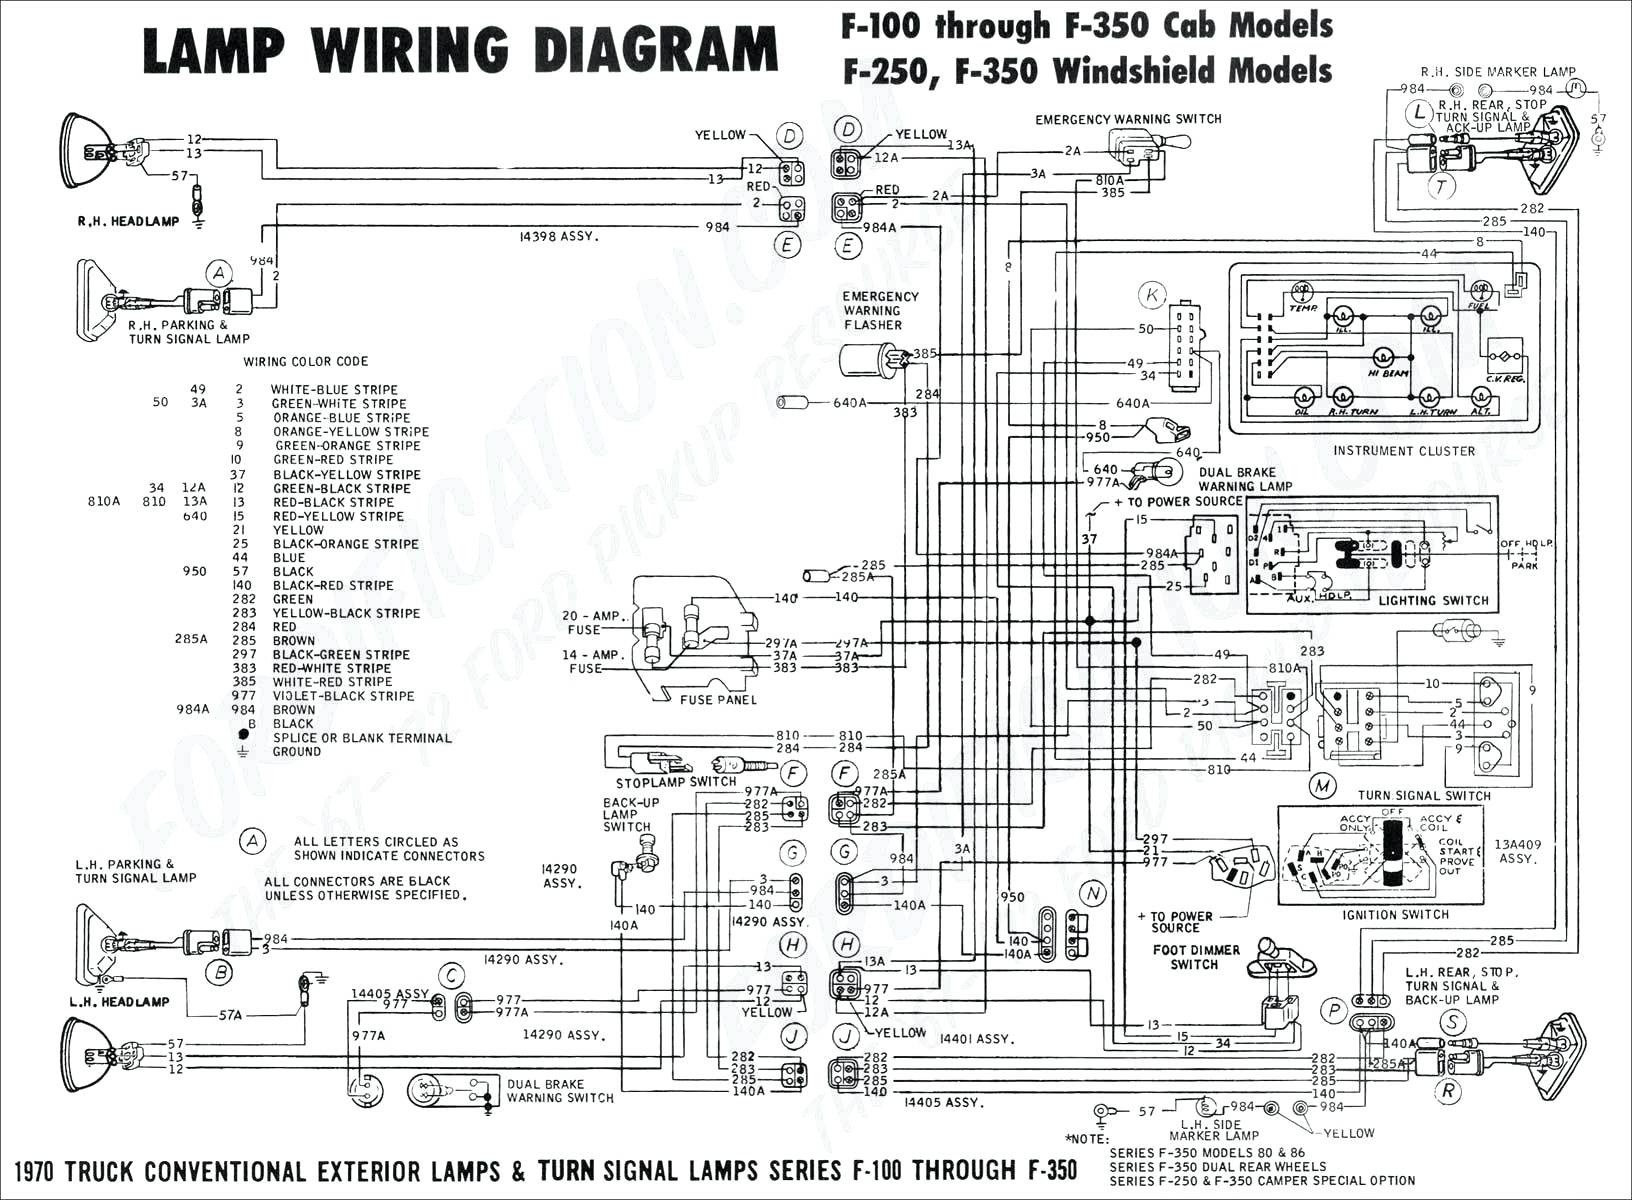 Vw Beetle Engine Diagram Wiring Diagram 1976 Chrysler Cordoba Engine Partment Wiring Of Vw Beetle Engine Diagram